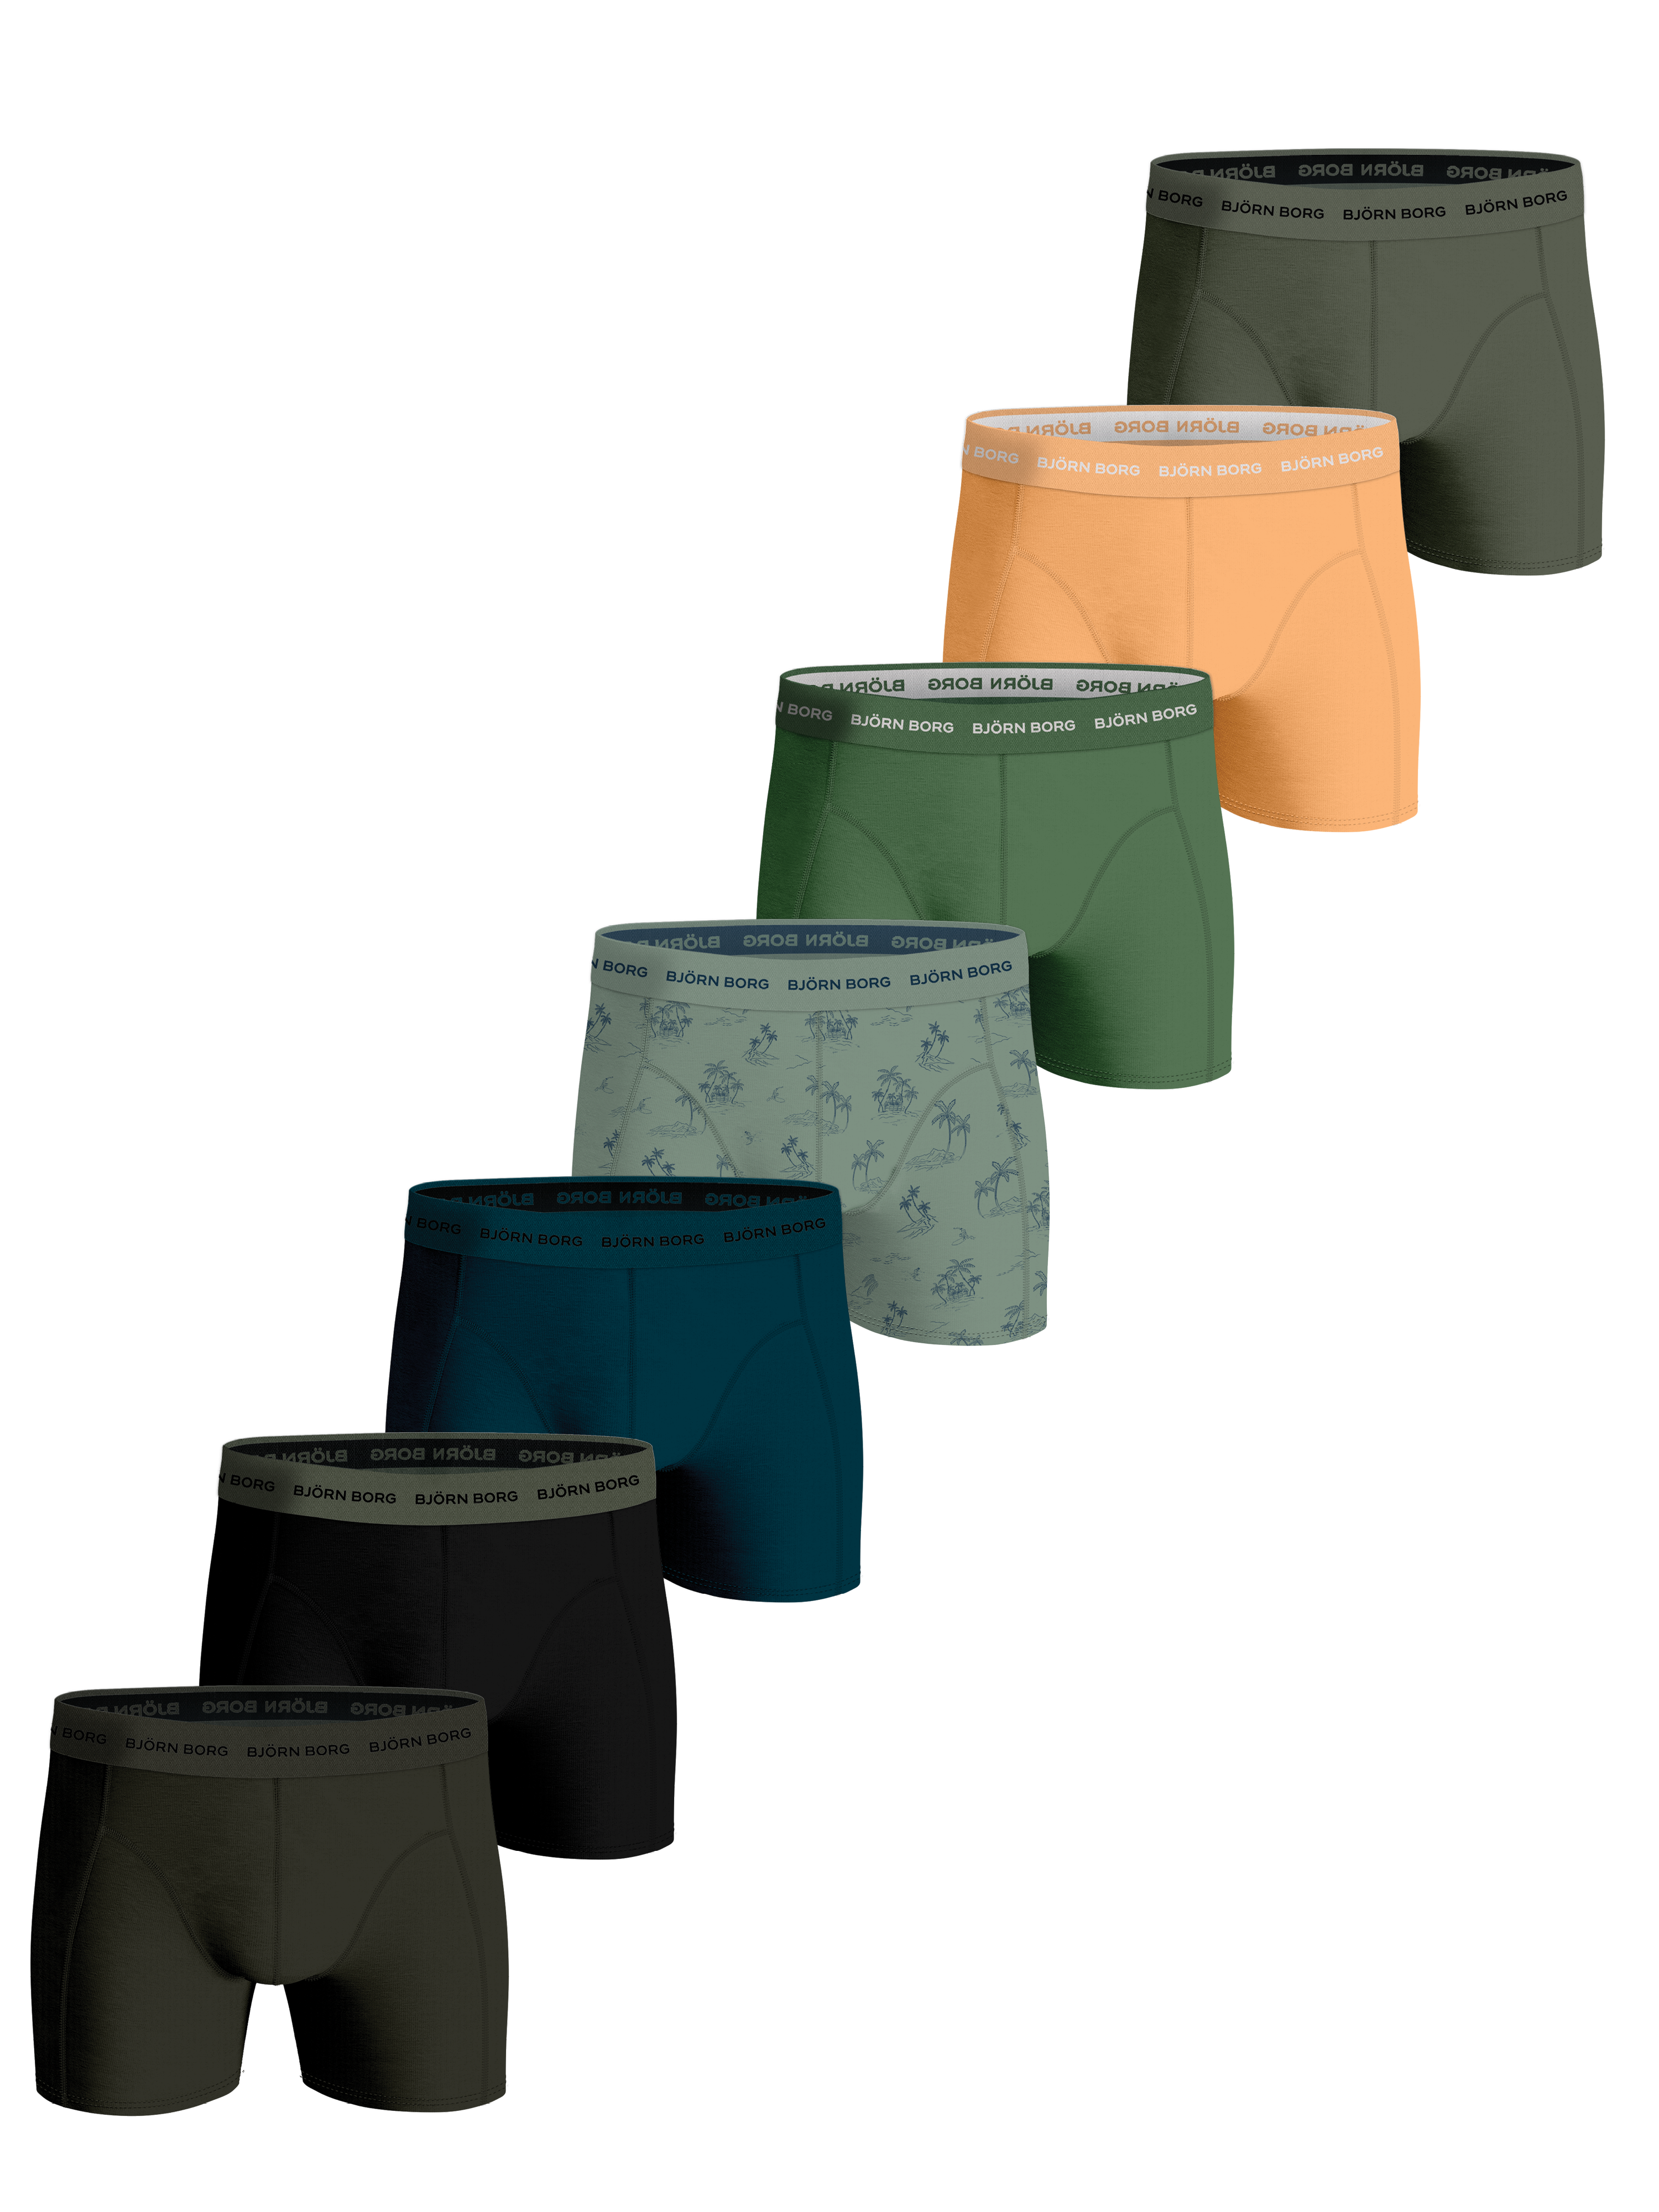 BjornBorg Mens Cotton Stretch Underwear (Multi - 7 Pack)